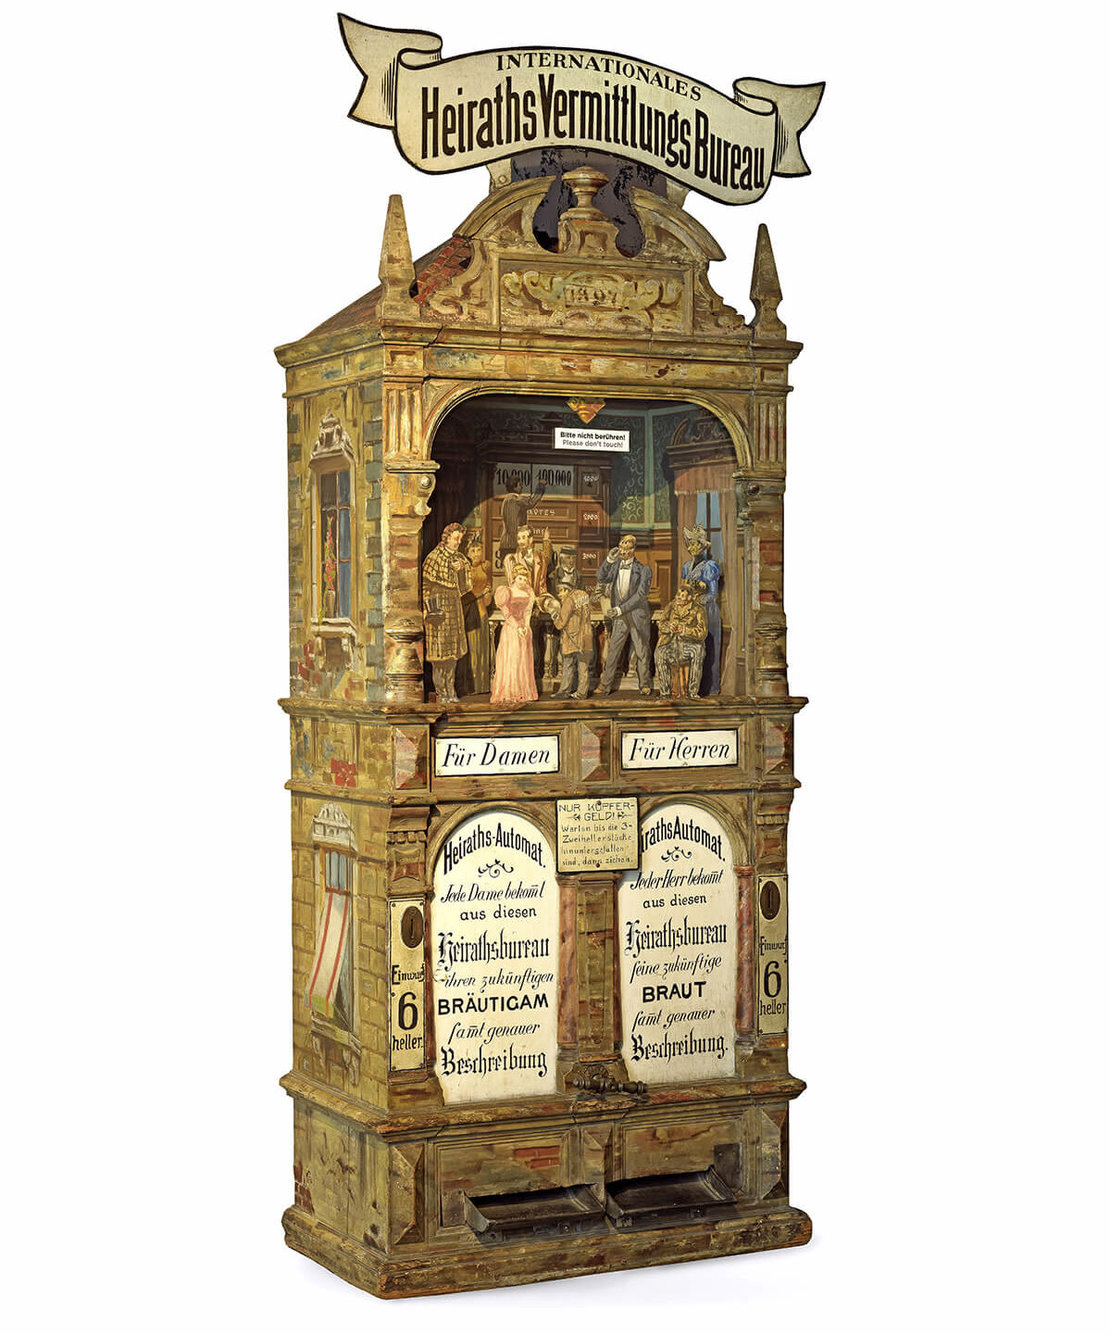 Automat „Internationales HeirathsVermittlungsBureau“, 1897, Wien Museum 